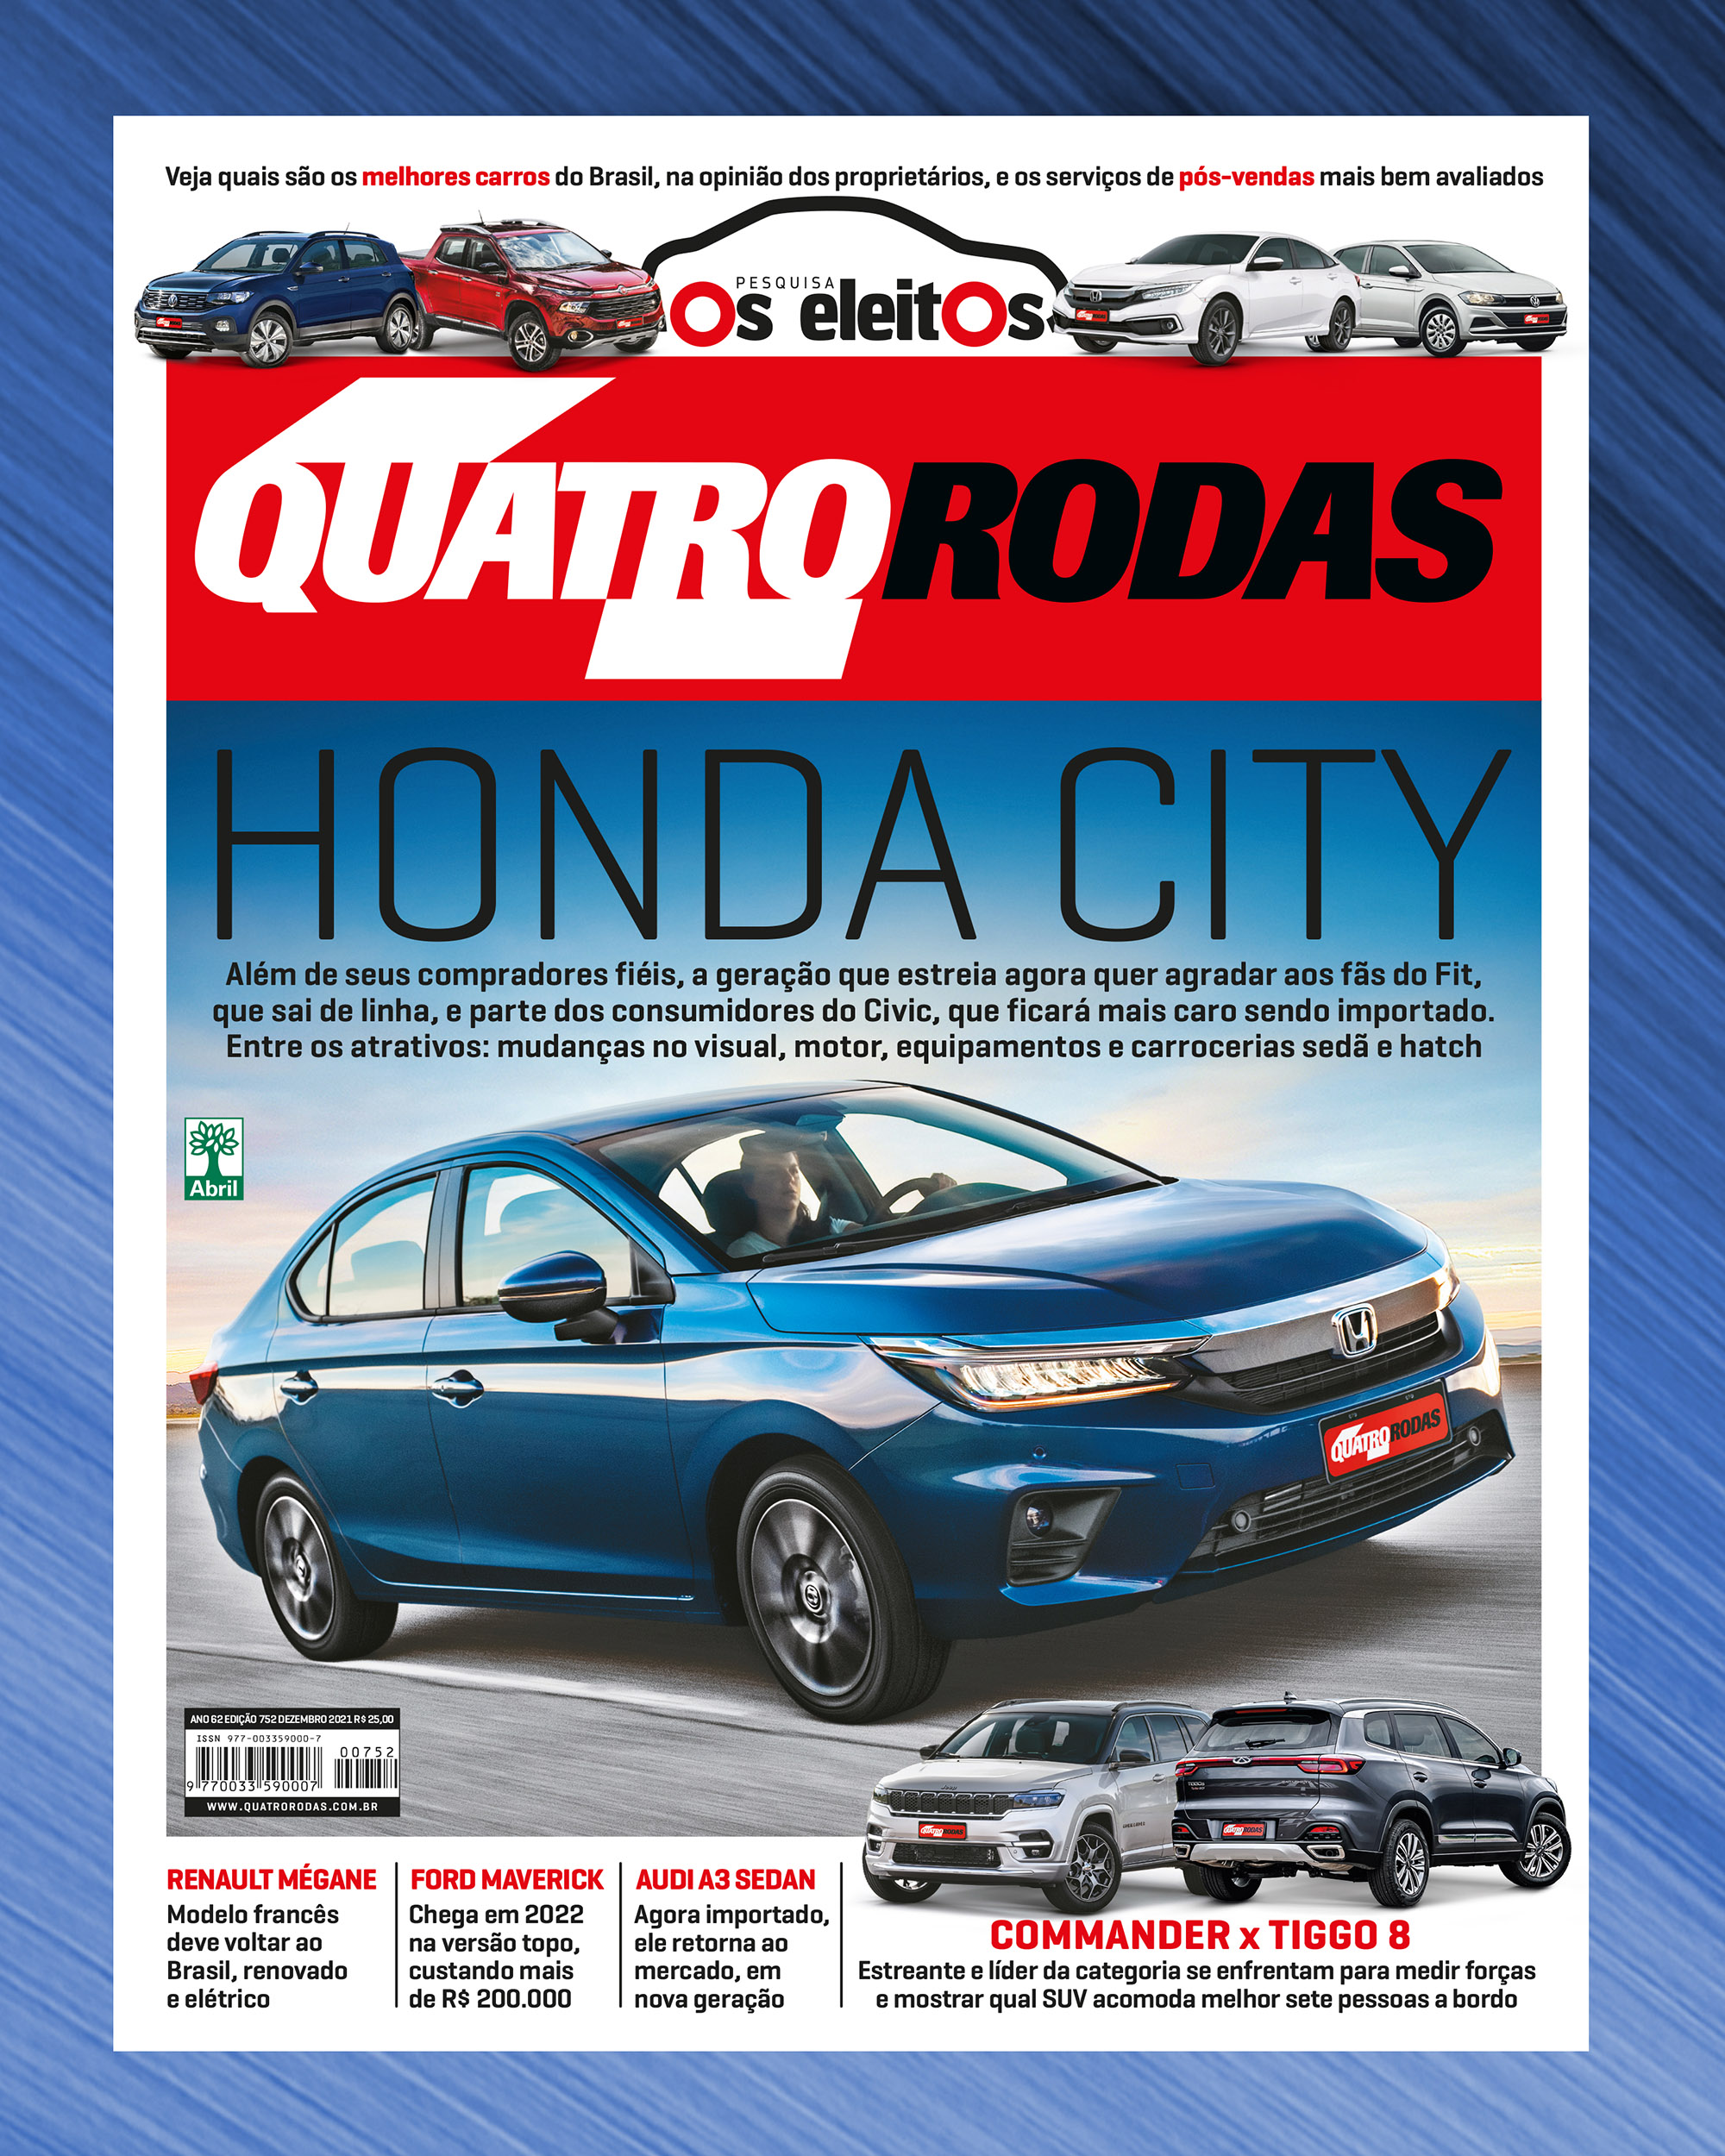 Trocar Fit por City hatch foi a decisão mais arriscada da Honda no Brasil